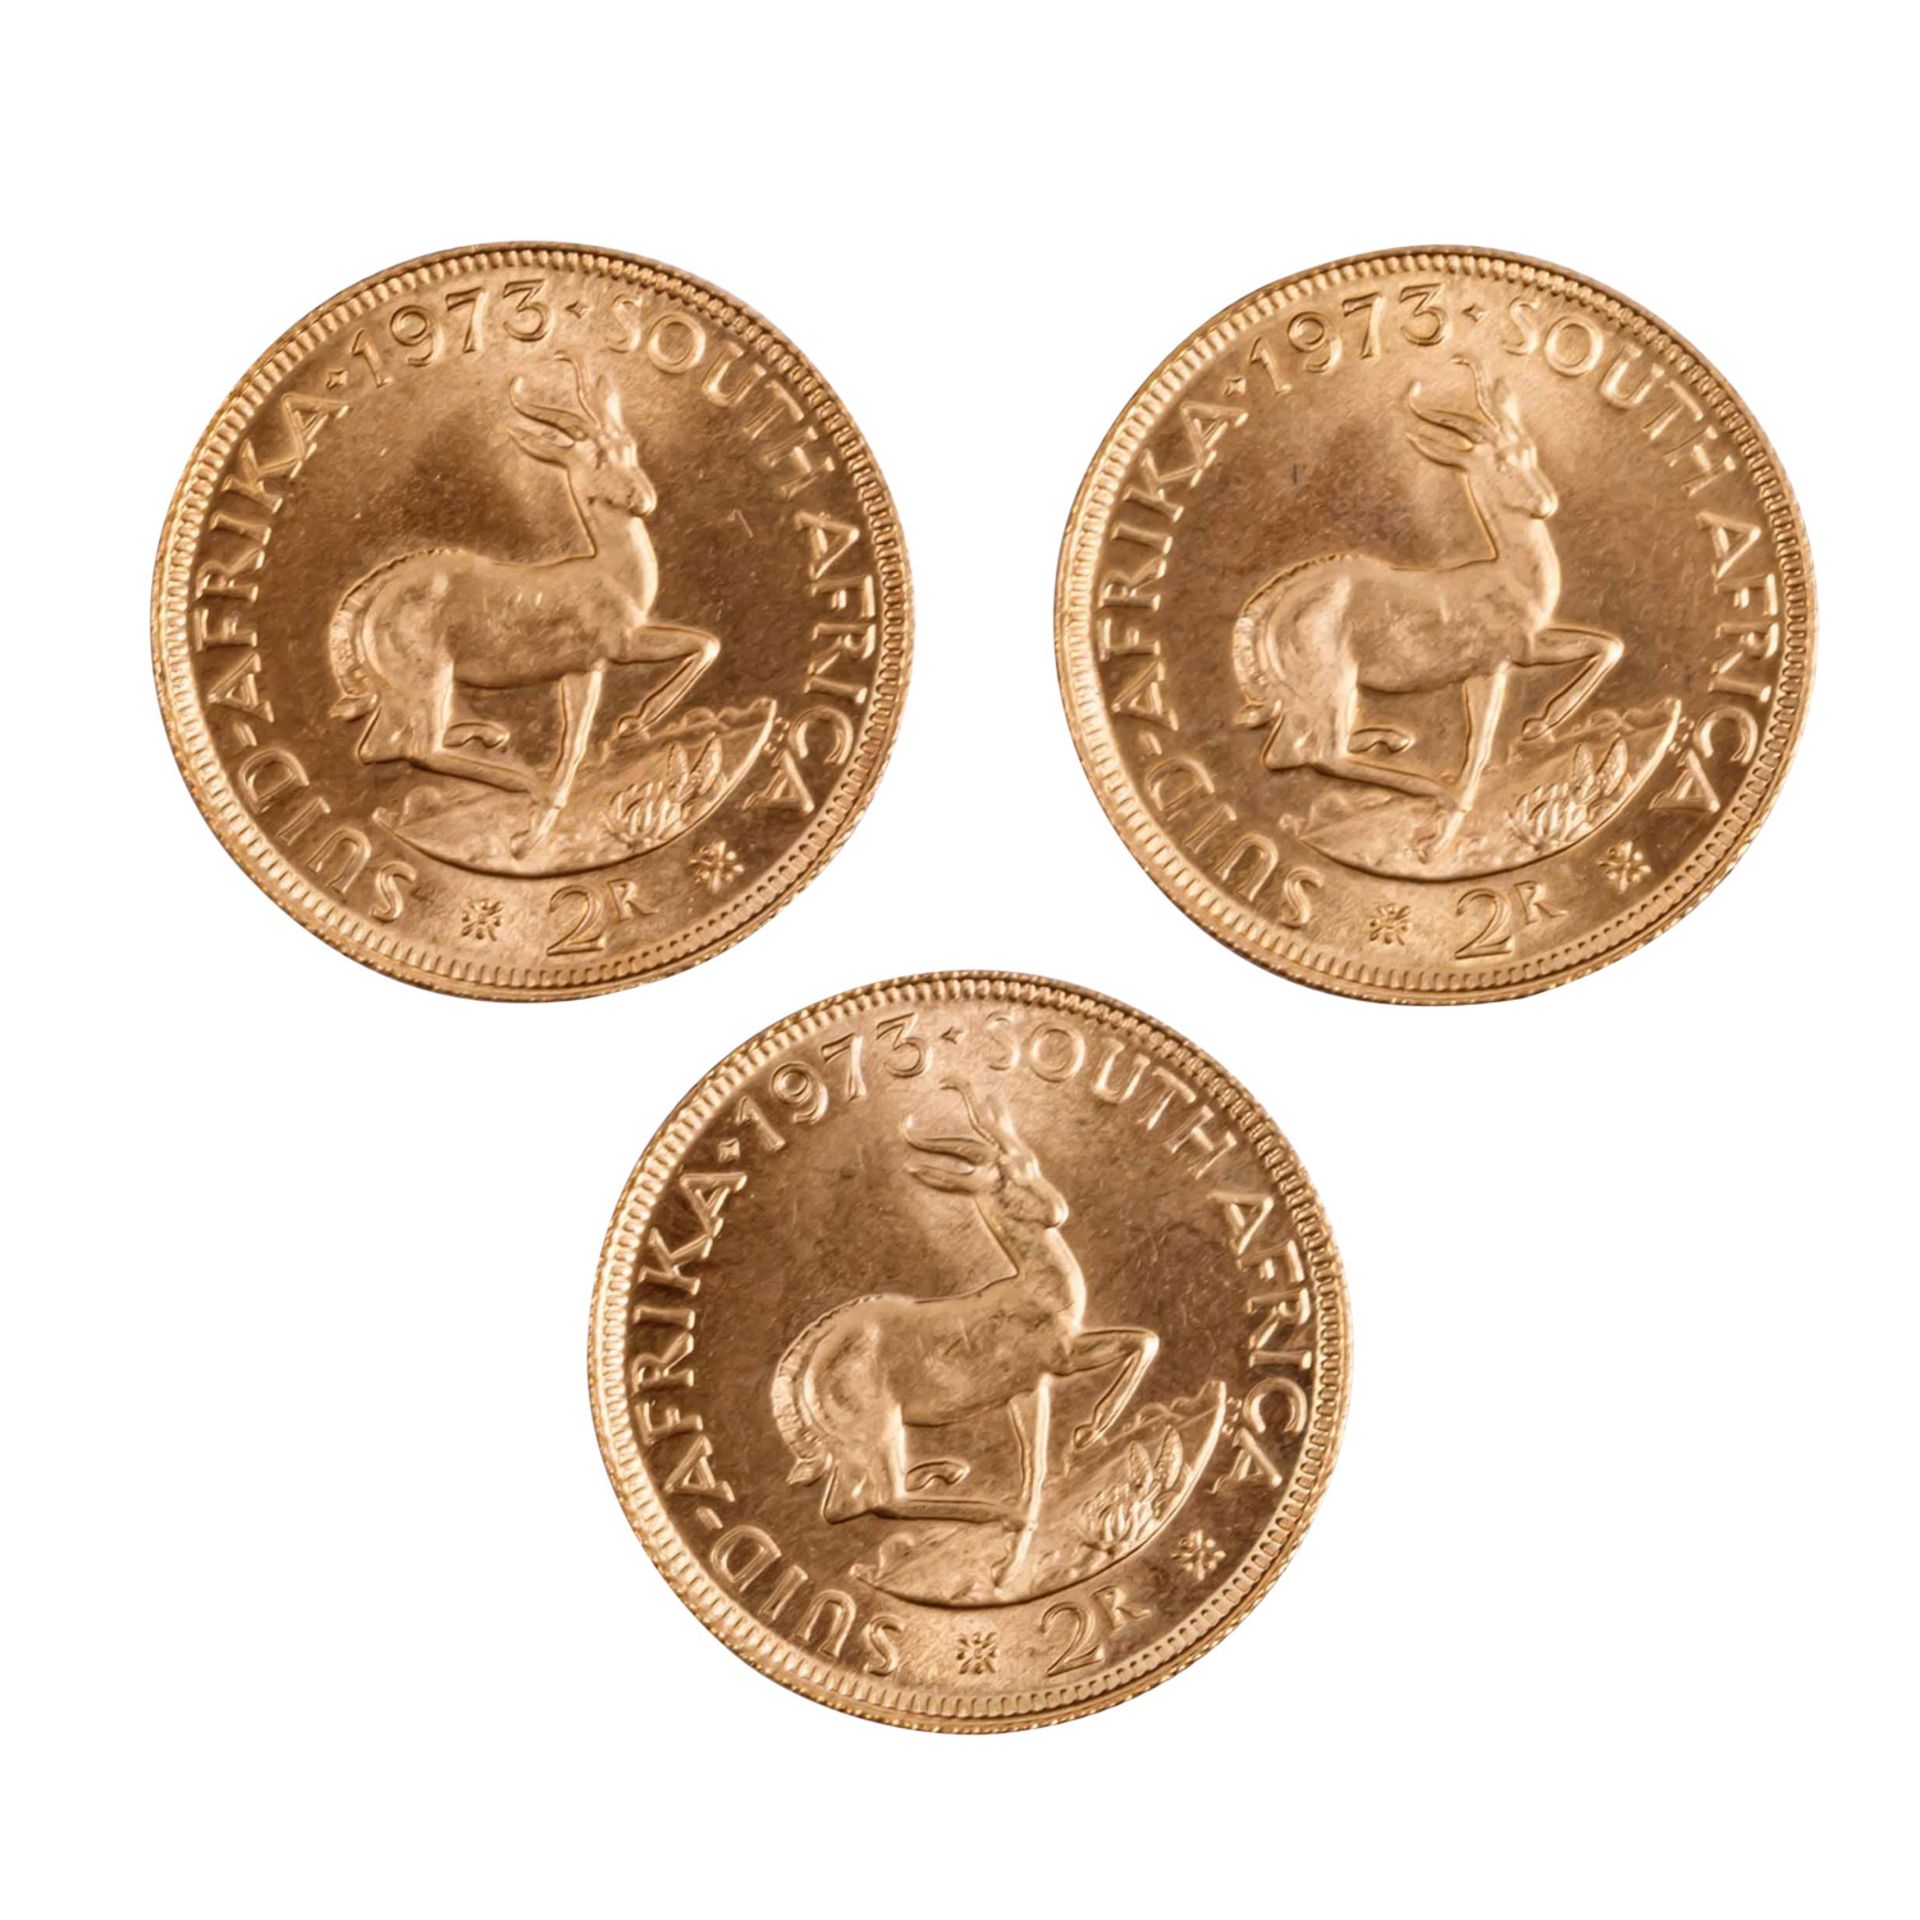 Südafrika/GOLD - 3 x 2 Rand 1973, vz+, Kratzer, minimalst verschmutzt, - Image 2 of 2